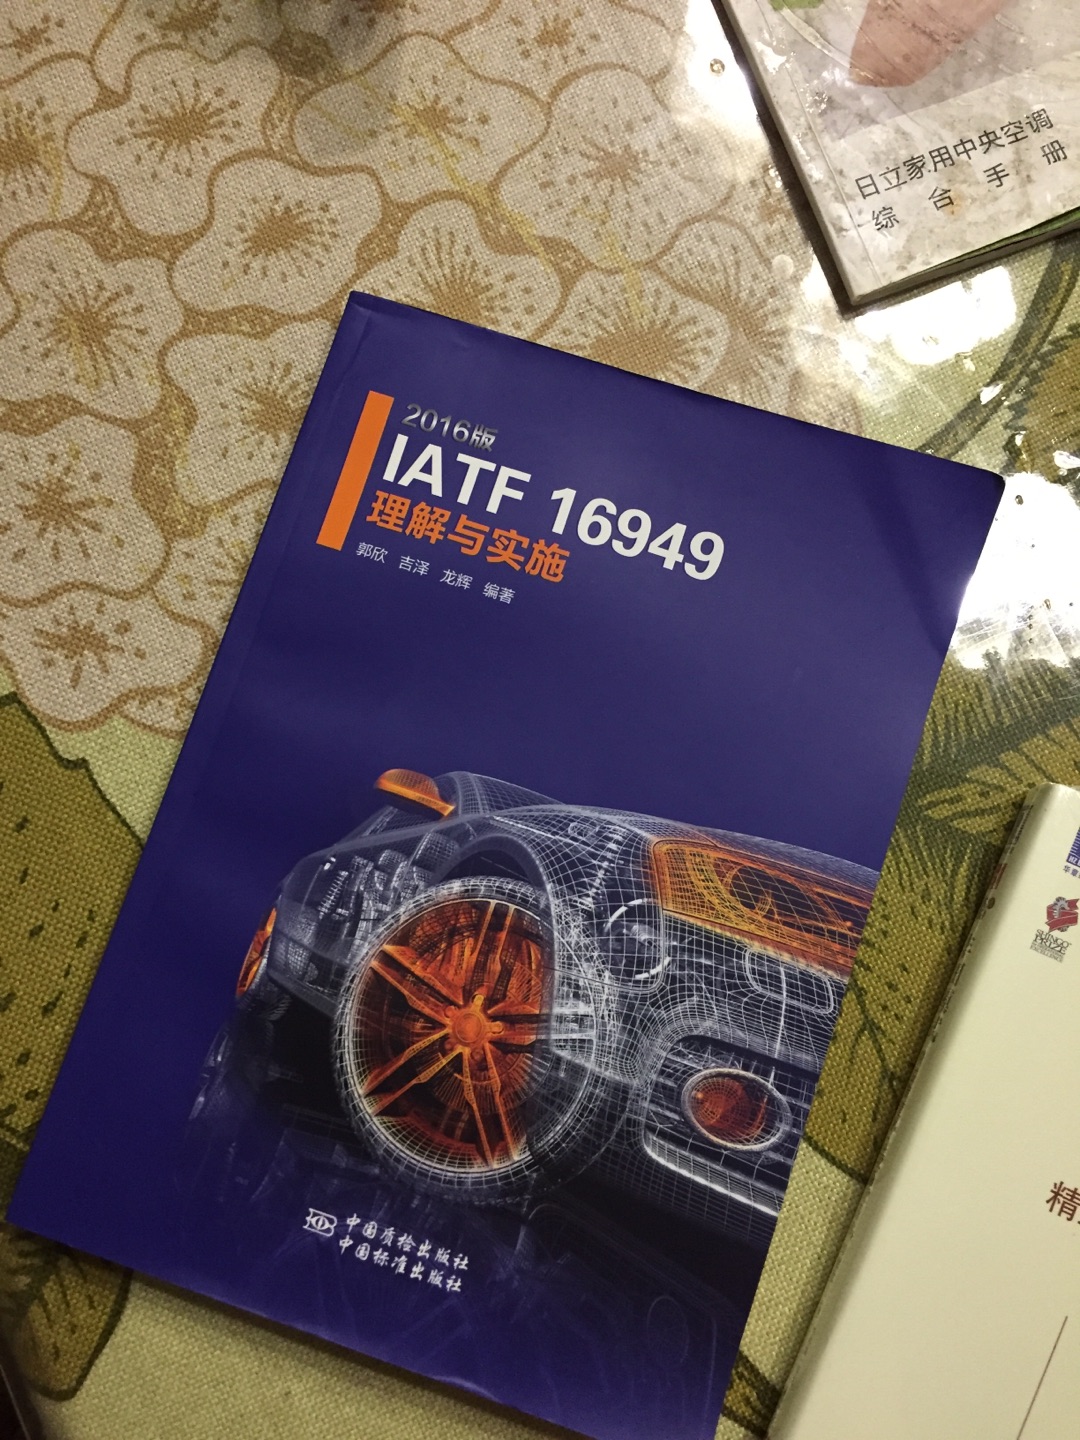 针对最新的IATF16949做的说明介绍，可读性很强，的速度也是一如既往的快